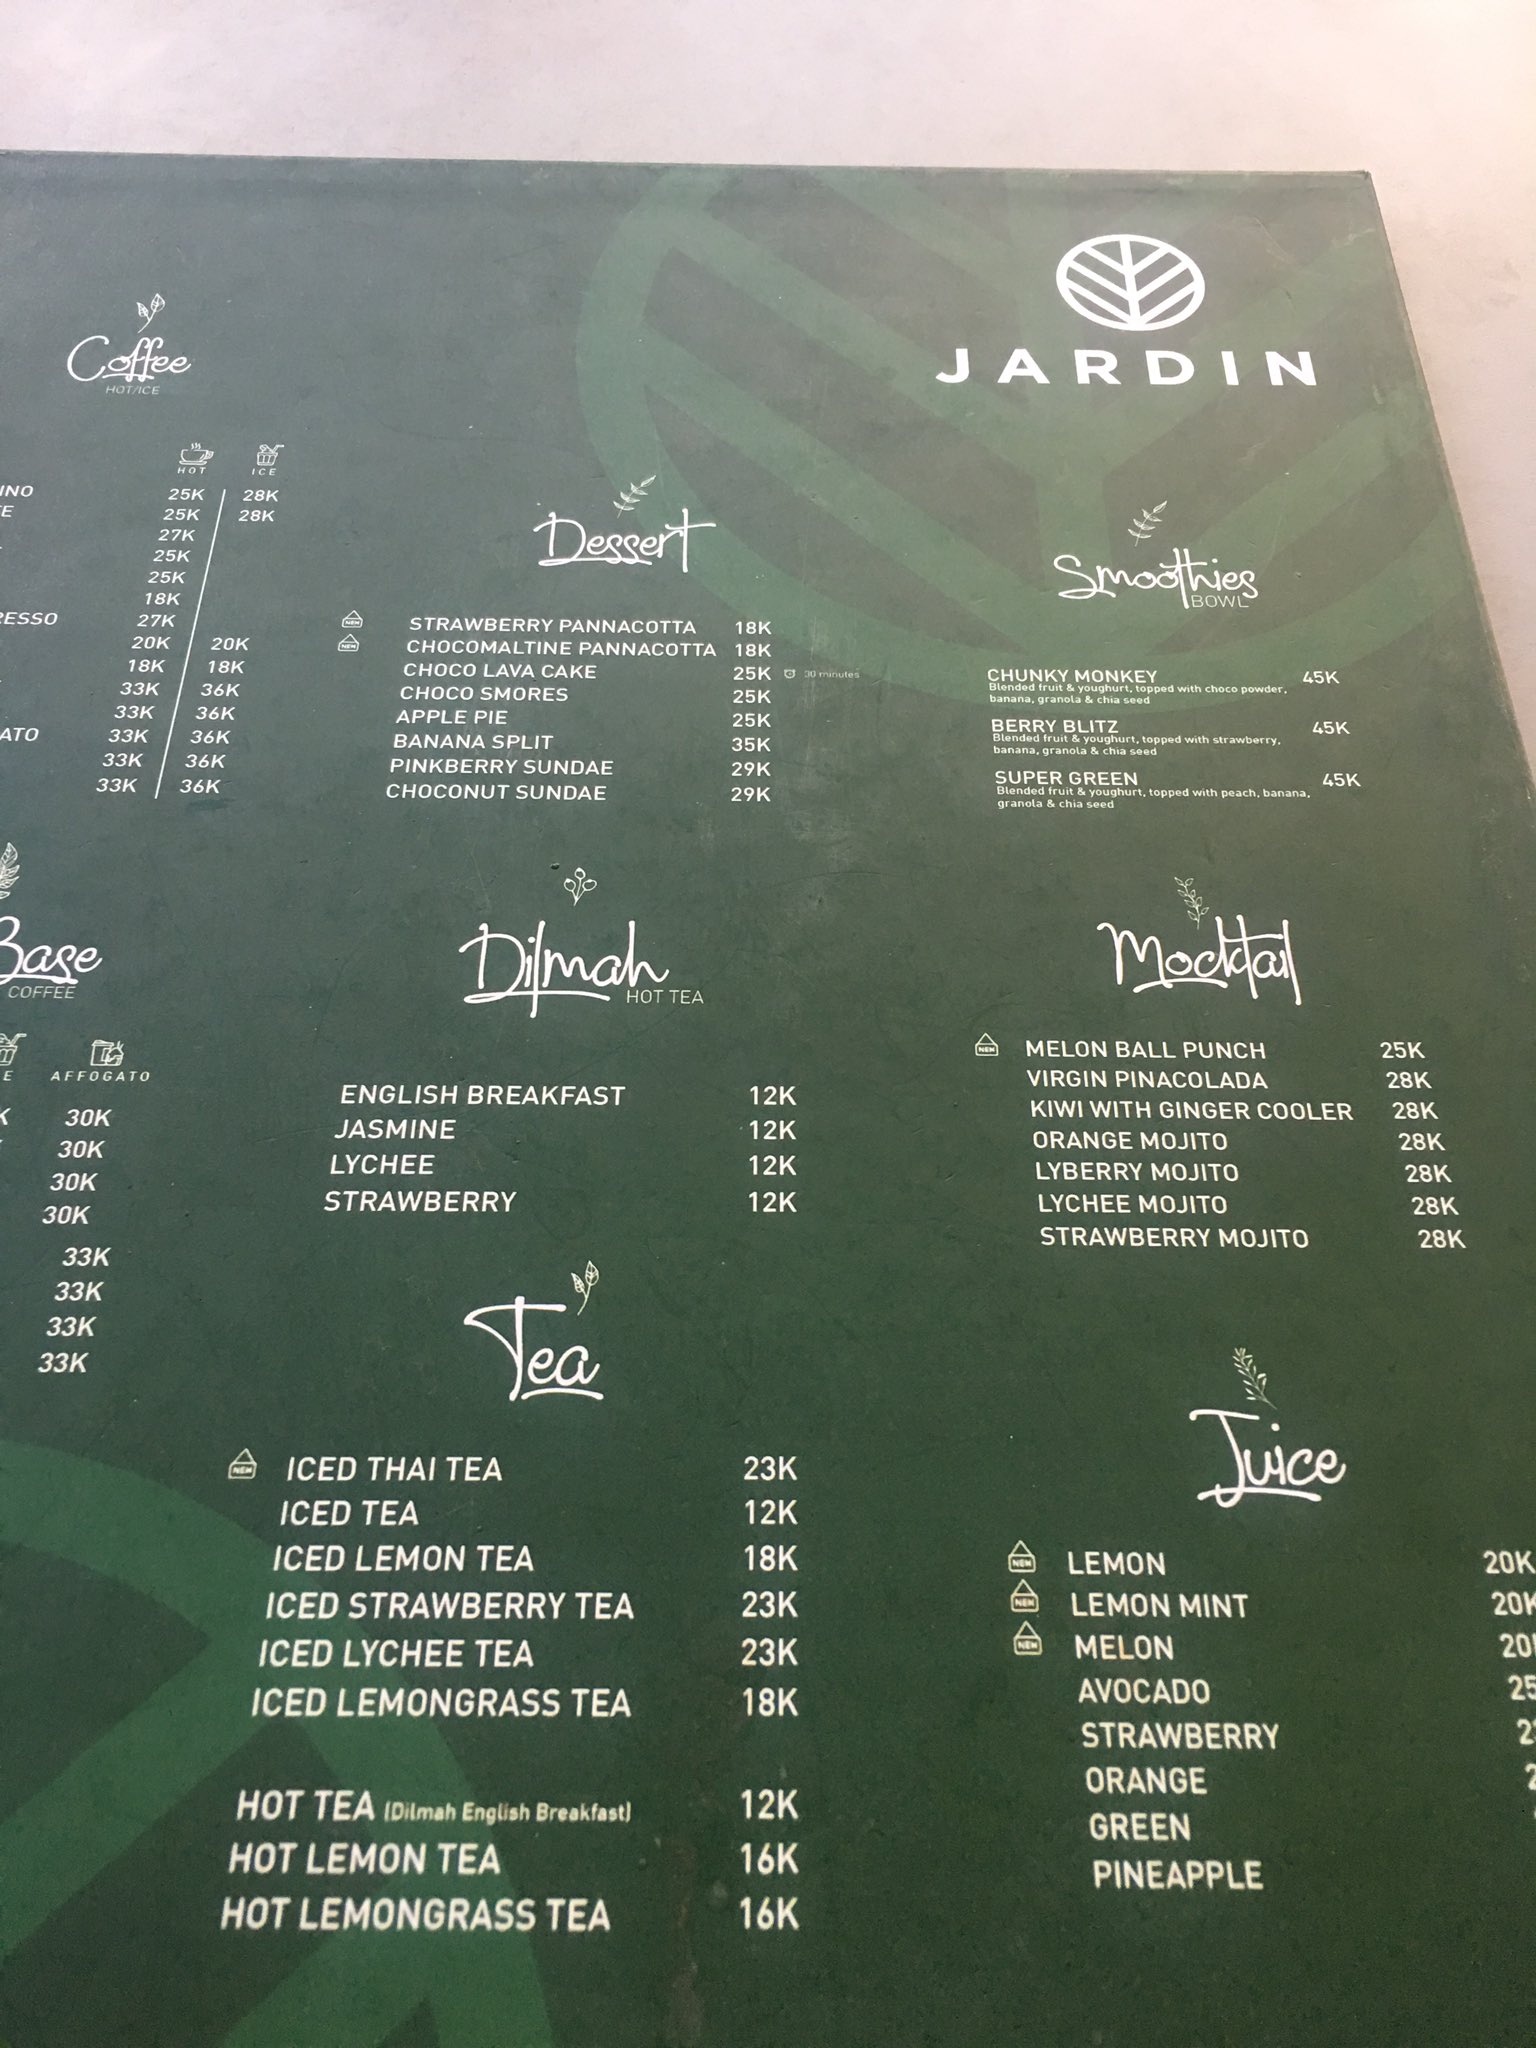 القائمة في مقهى جاردن باندونغ